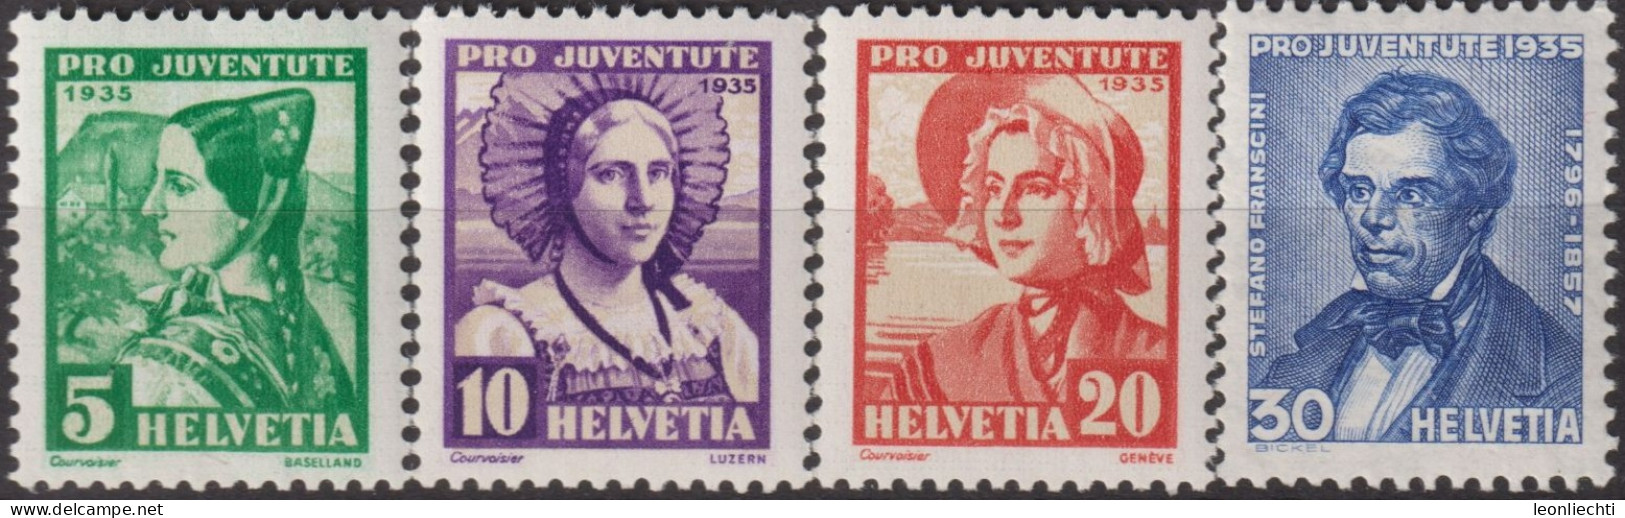 1935 Schweiz / Pro Juventute ** Zum:CH J73-J76, Mi:CH 287-290, Yt:CH 282-285, Frauentrachten, Stefano Franscini - Unused Stamps